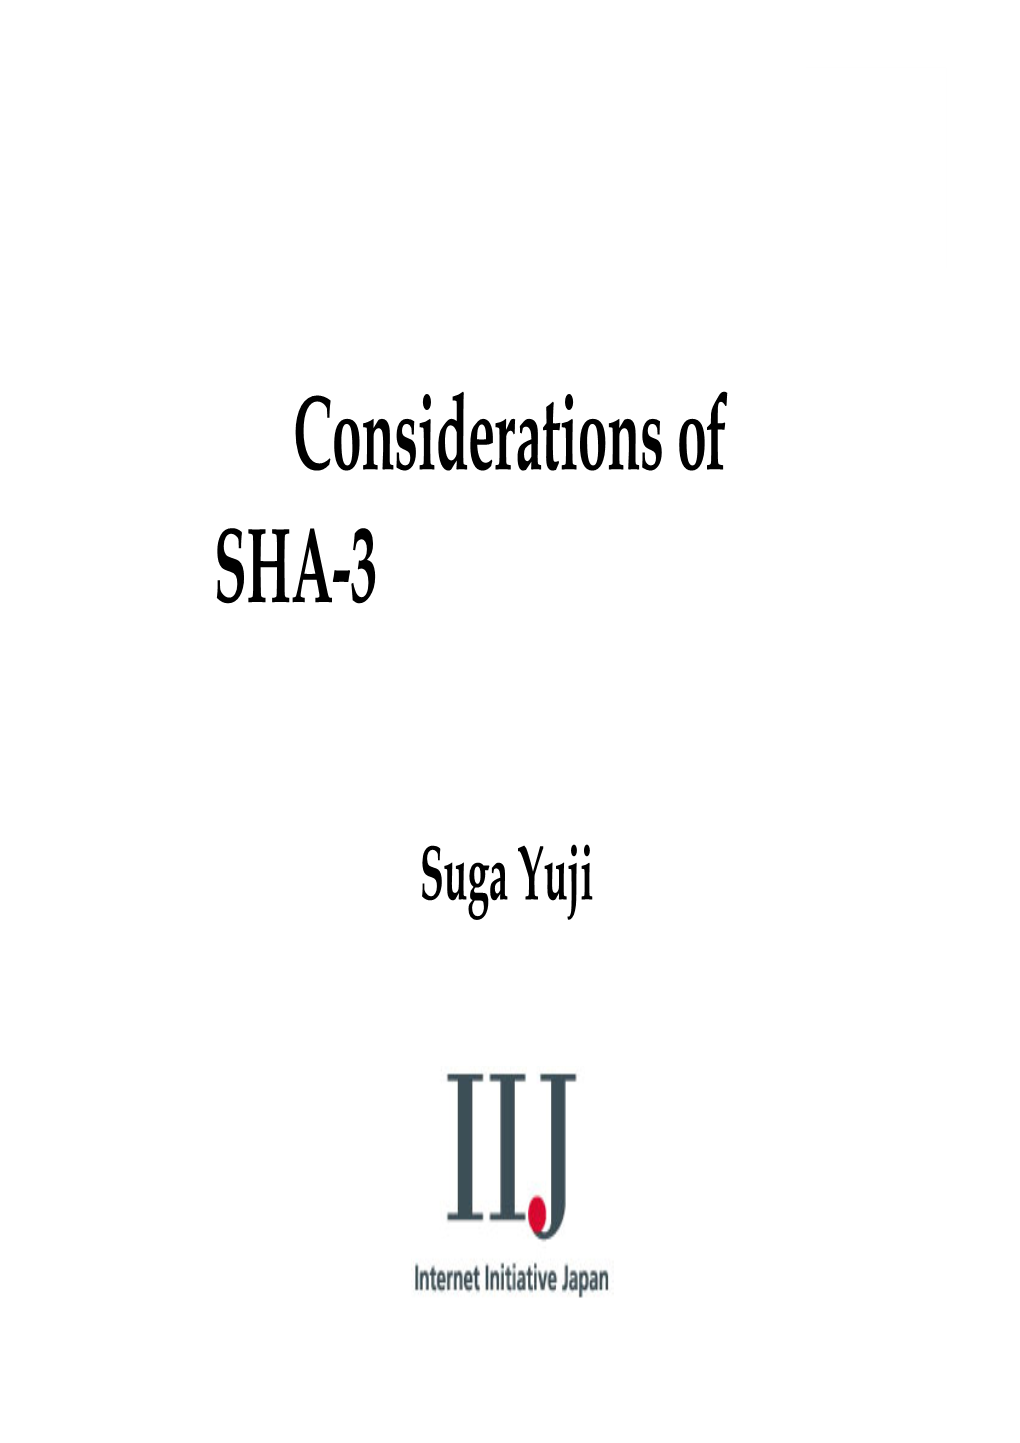 Suga Yuji Considerations of SHA-3 Candidate's Name